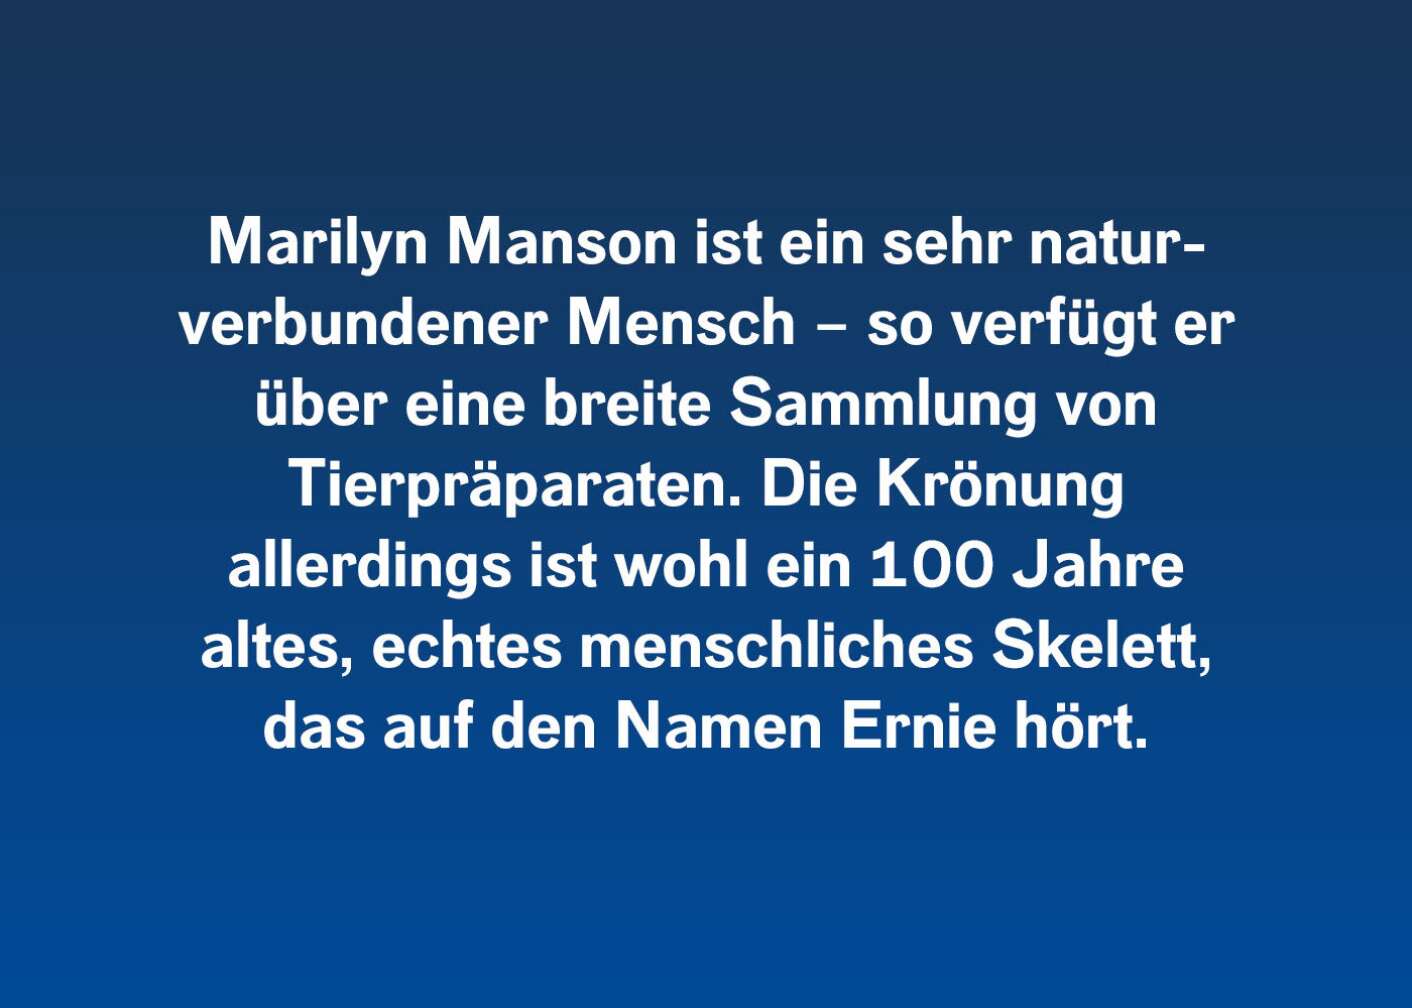 6 verrückte Storys von Marilyn Manson